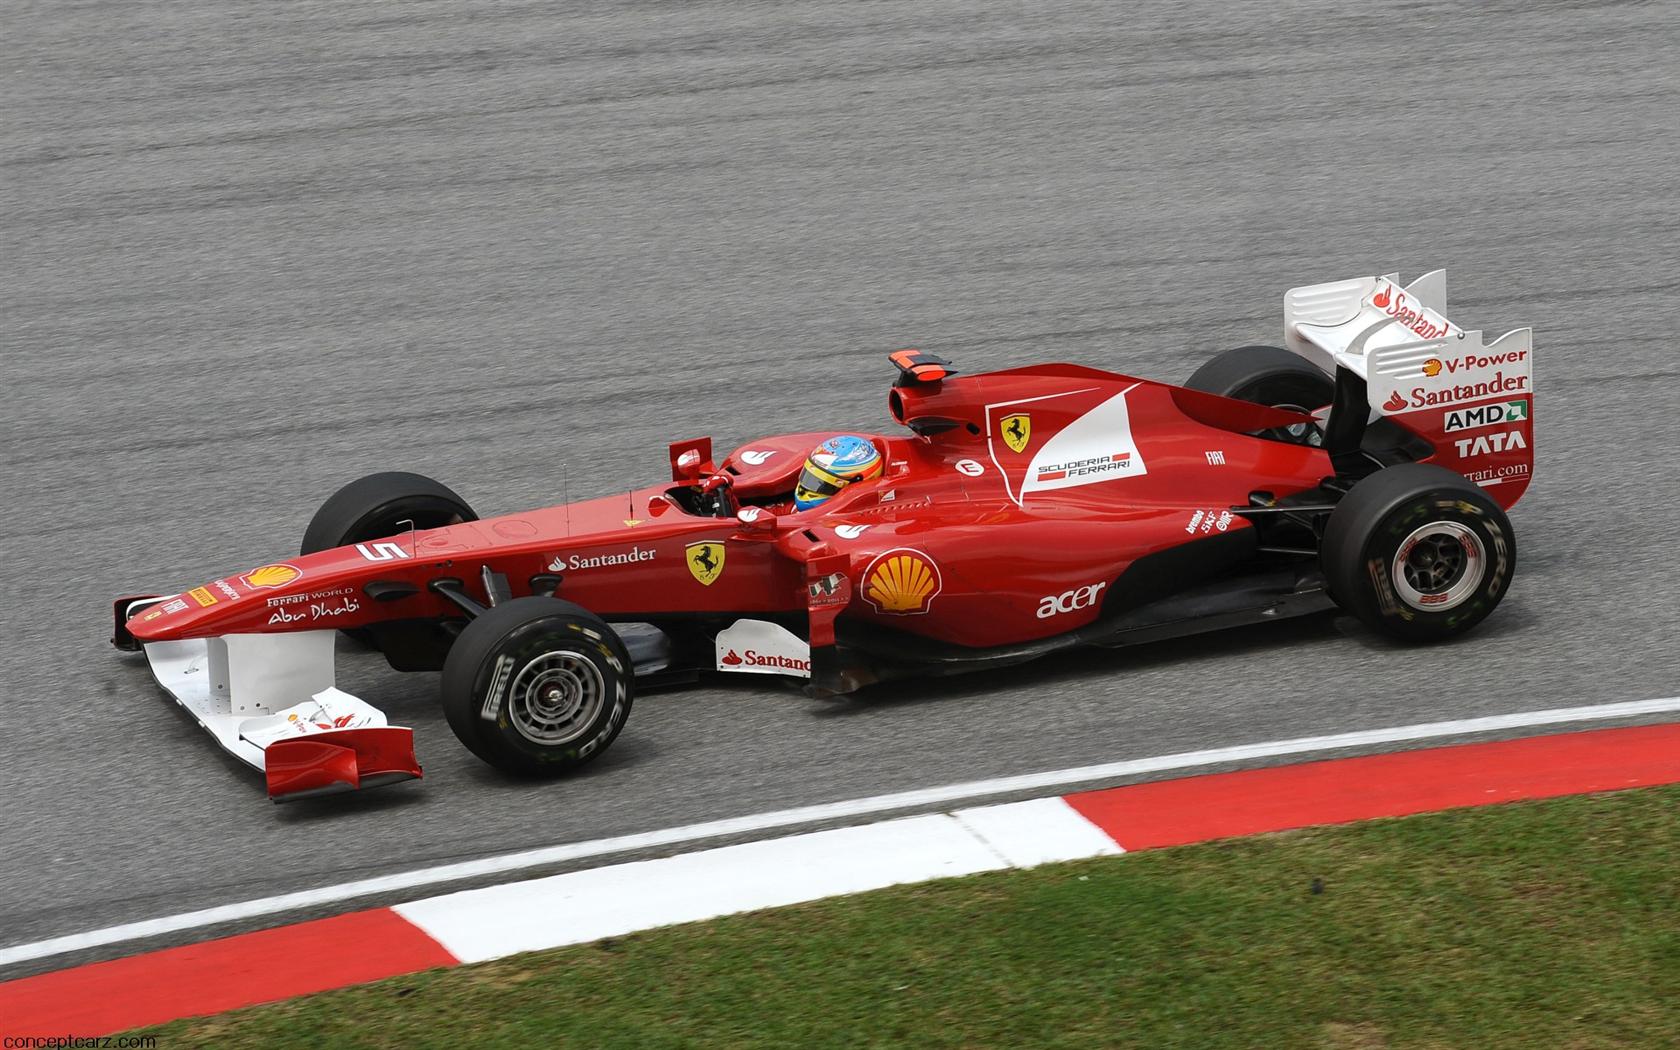 2011 Ferrari 150° Italia Images. Photo Ferrari-F1-150-Image-017-1680.jpg